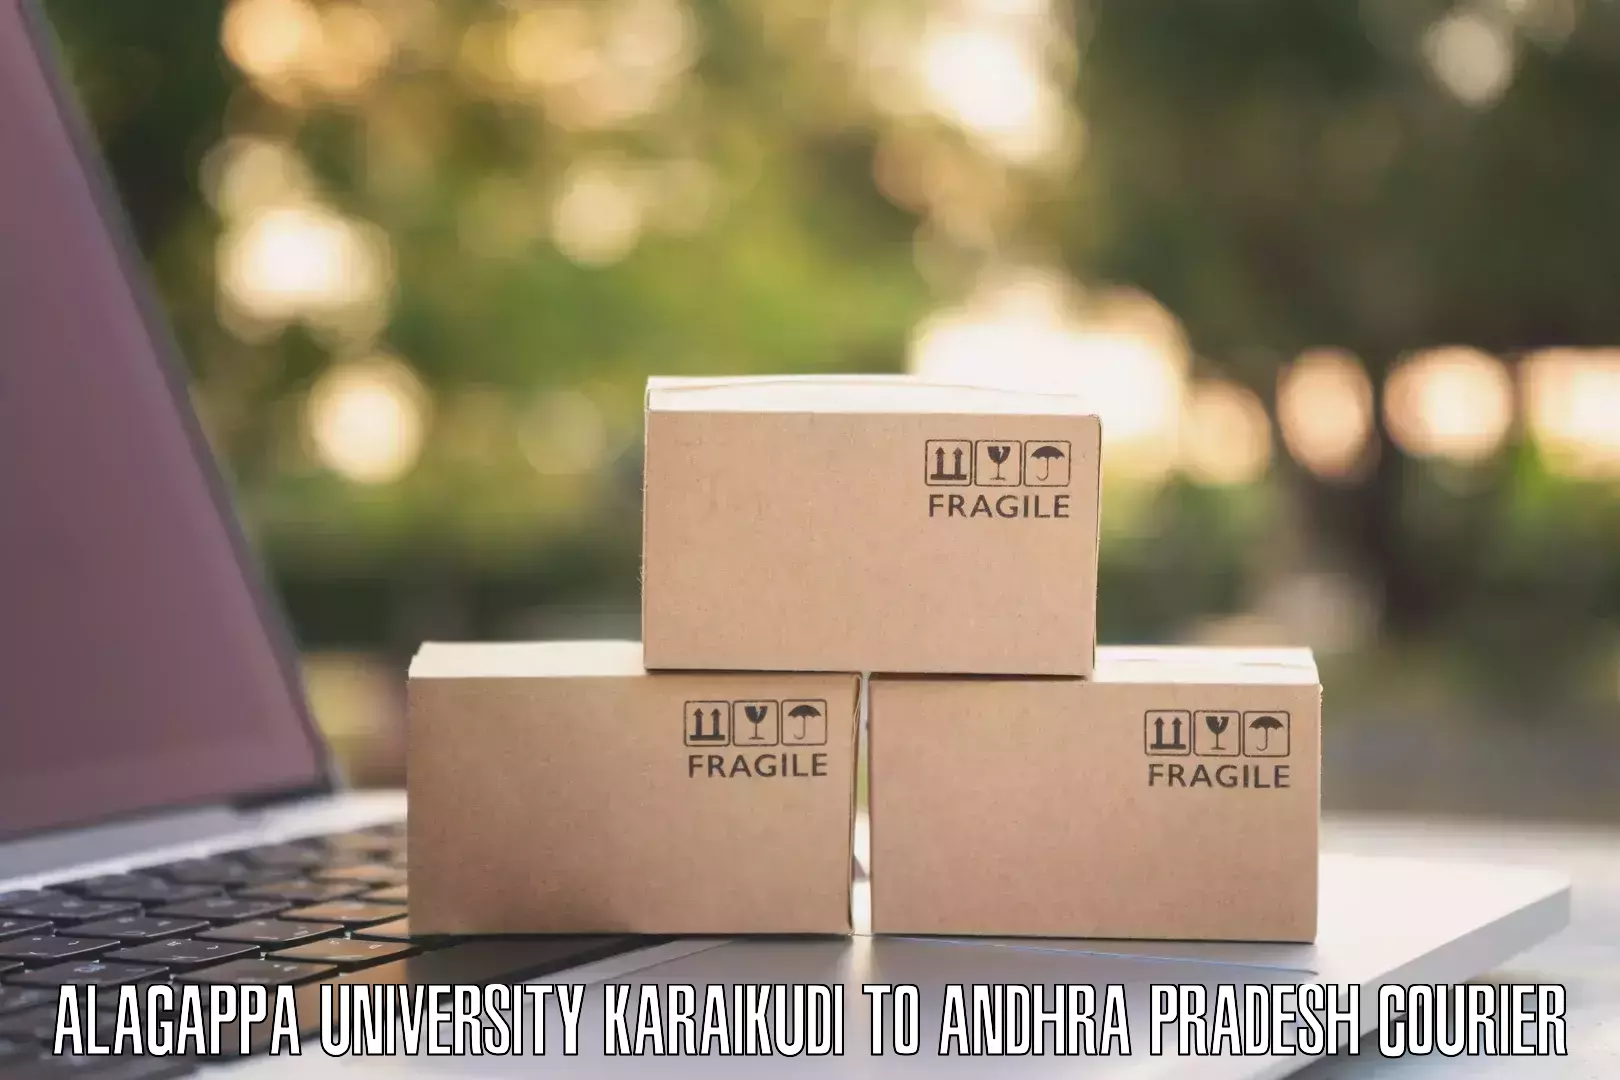 Express mail solutions Alagappa University Karaikudi to Visakhapatnam